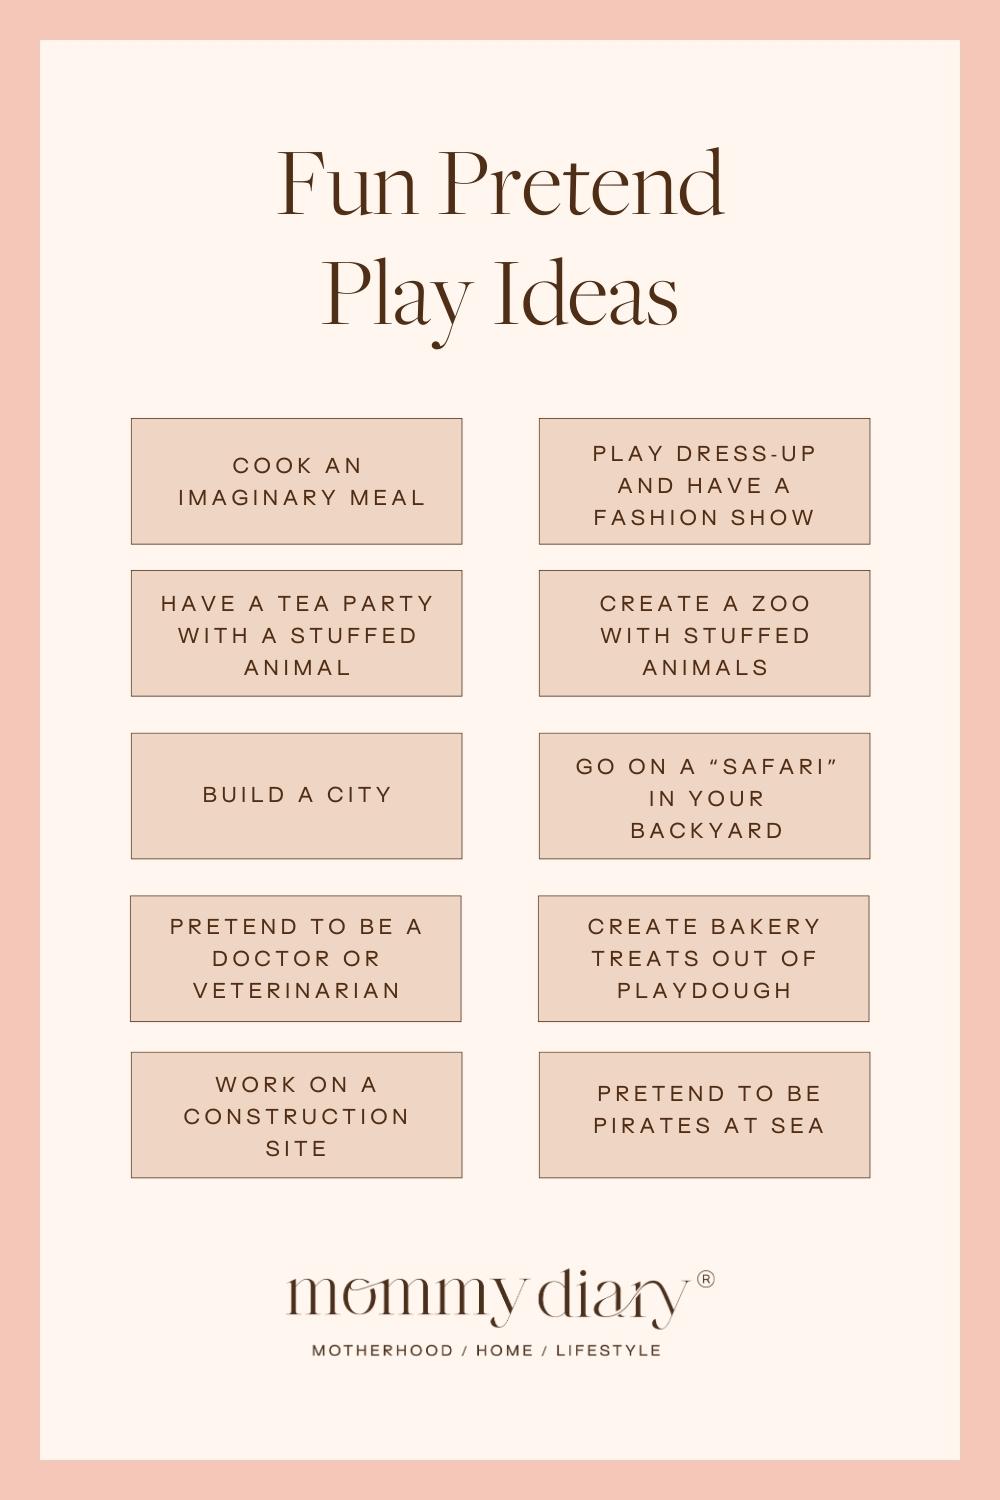 Fun Pretend Play Ideas